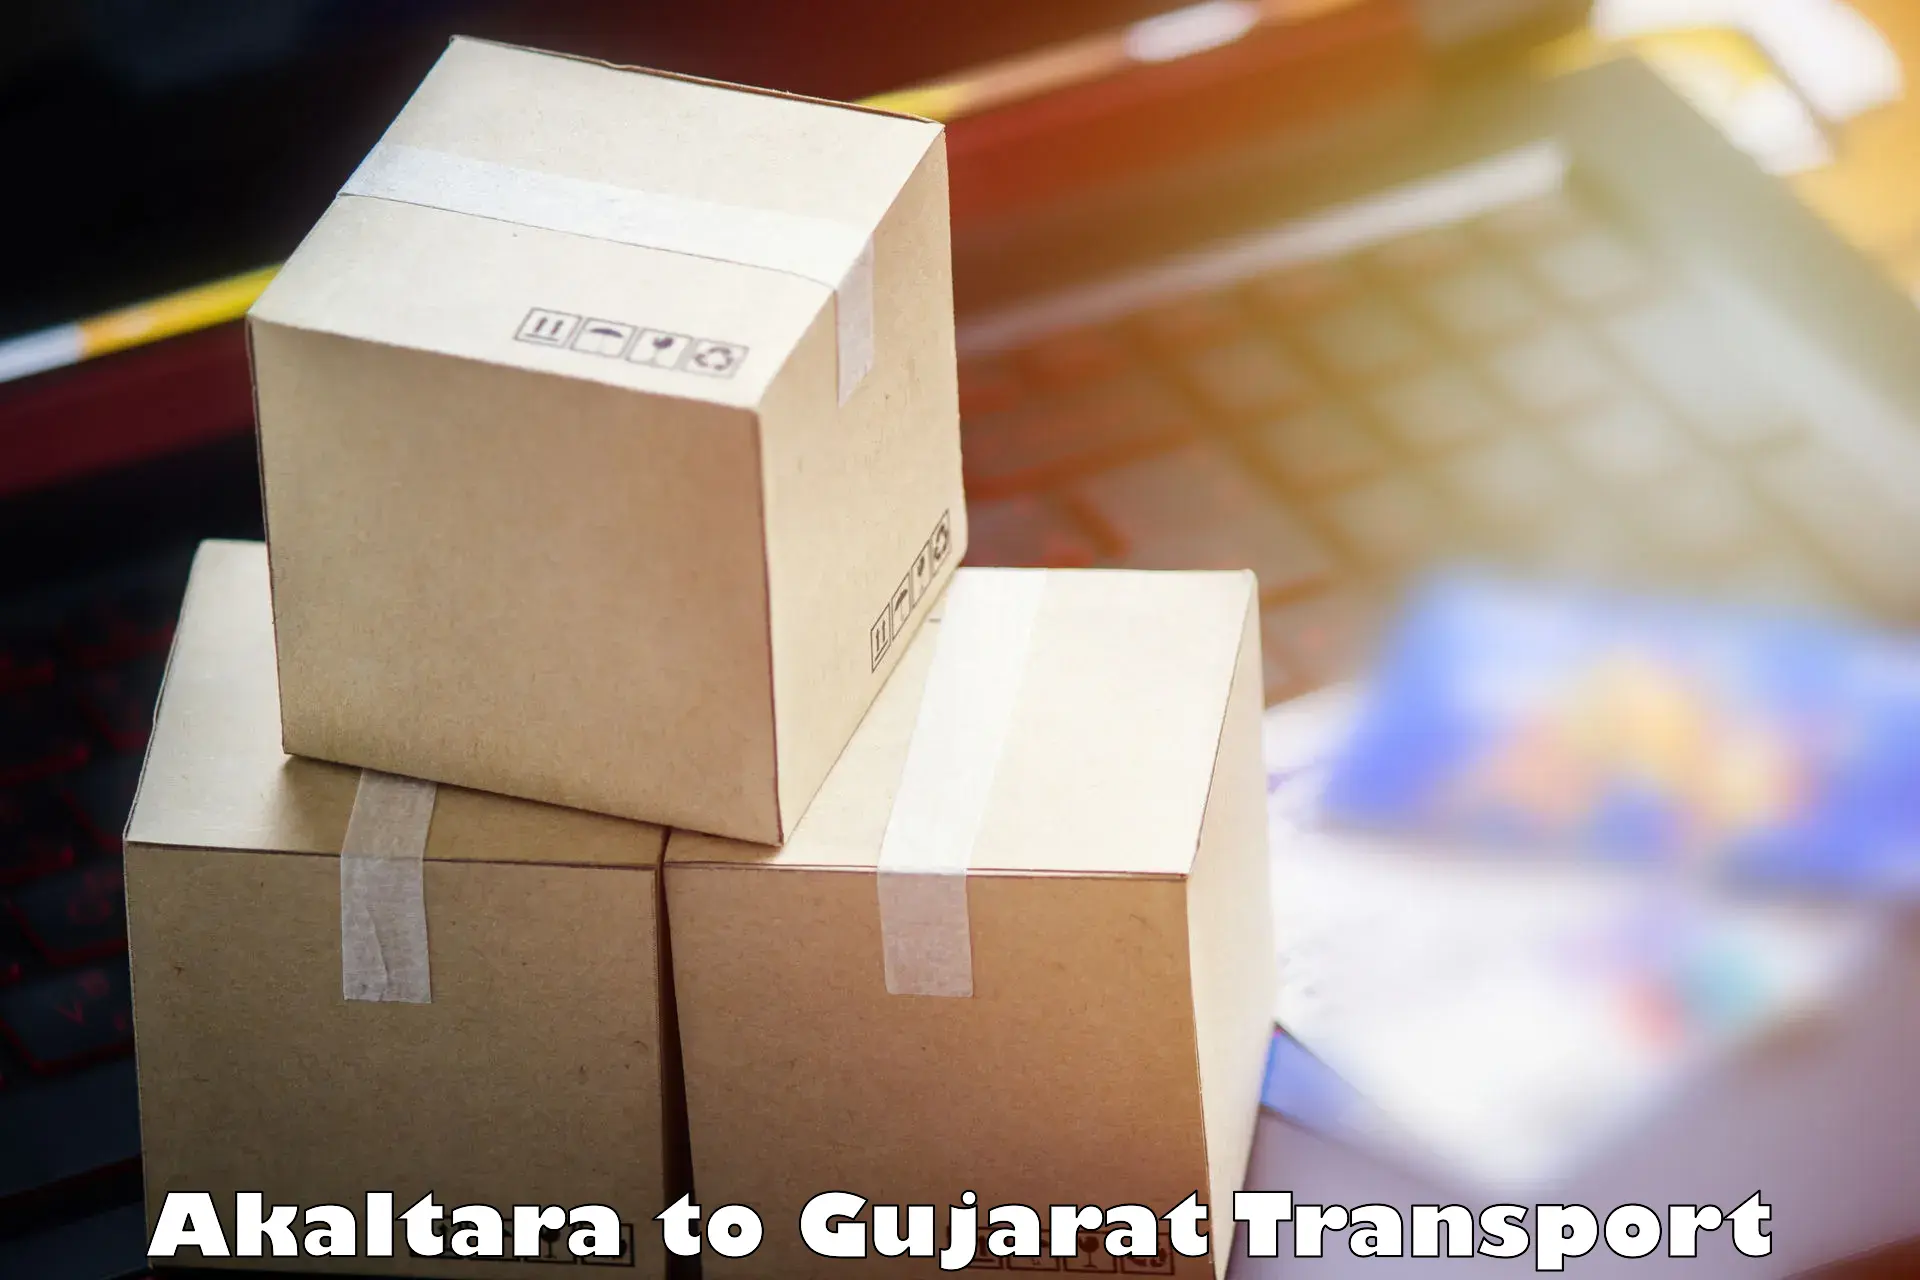 Commercial transport service Akaltara to Gujarat